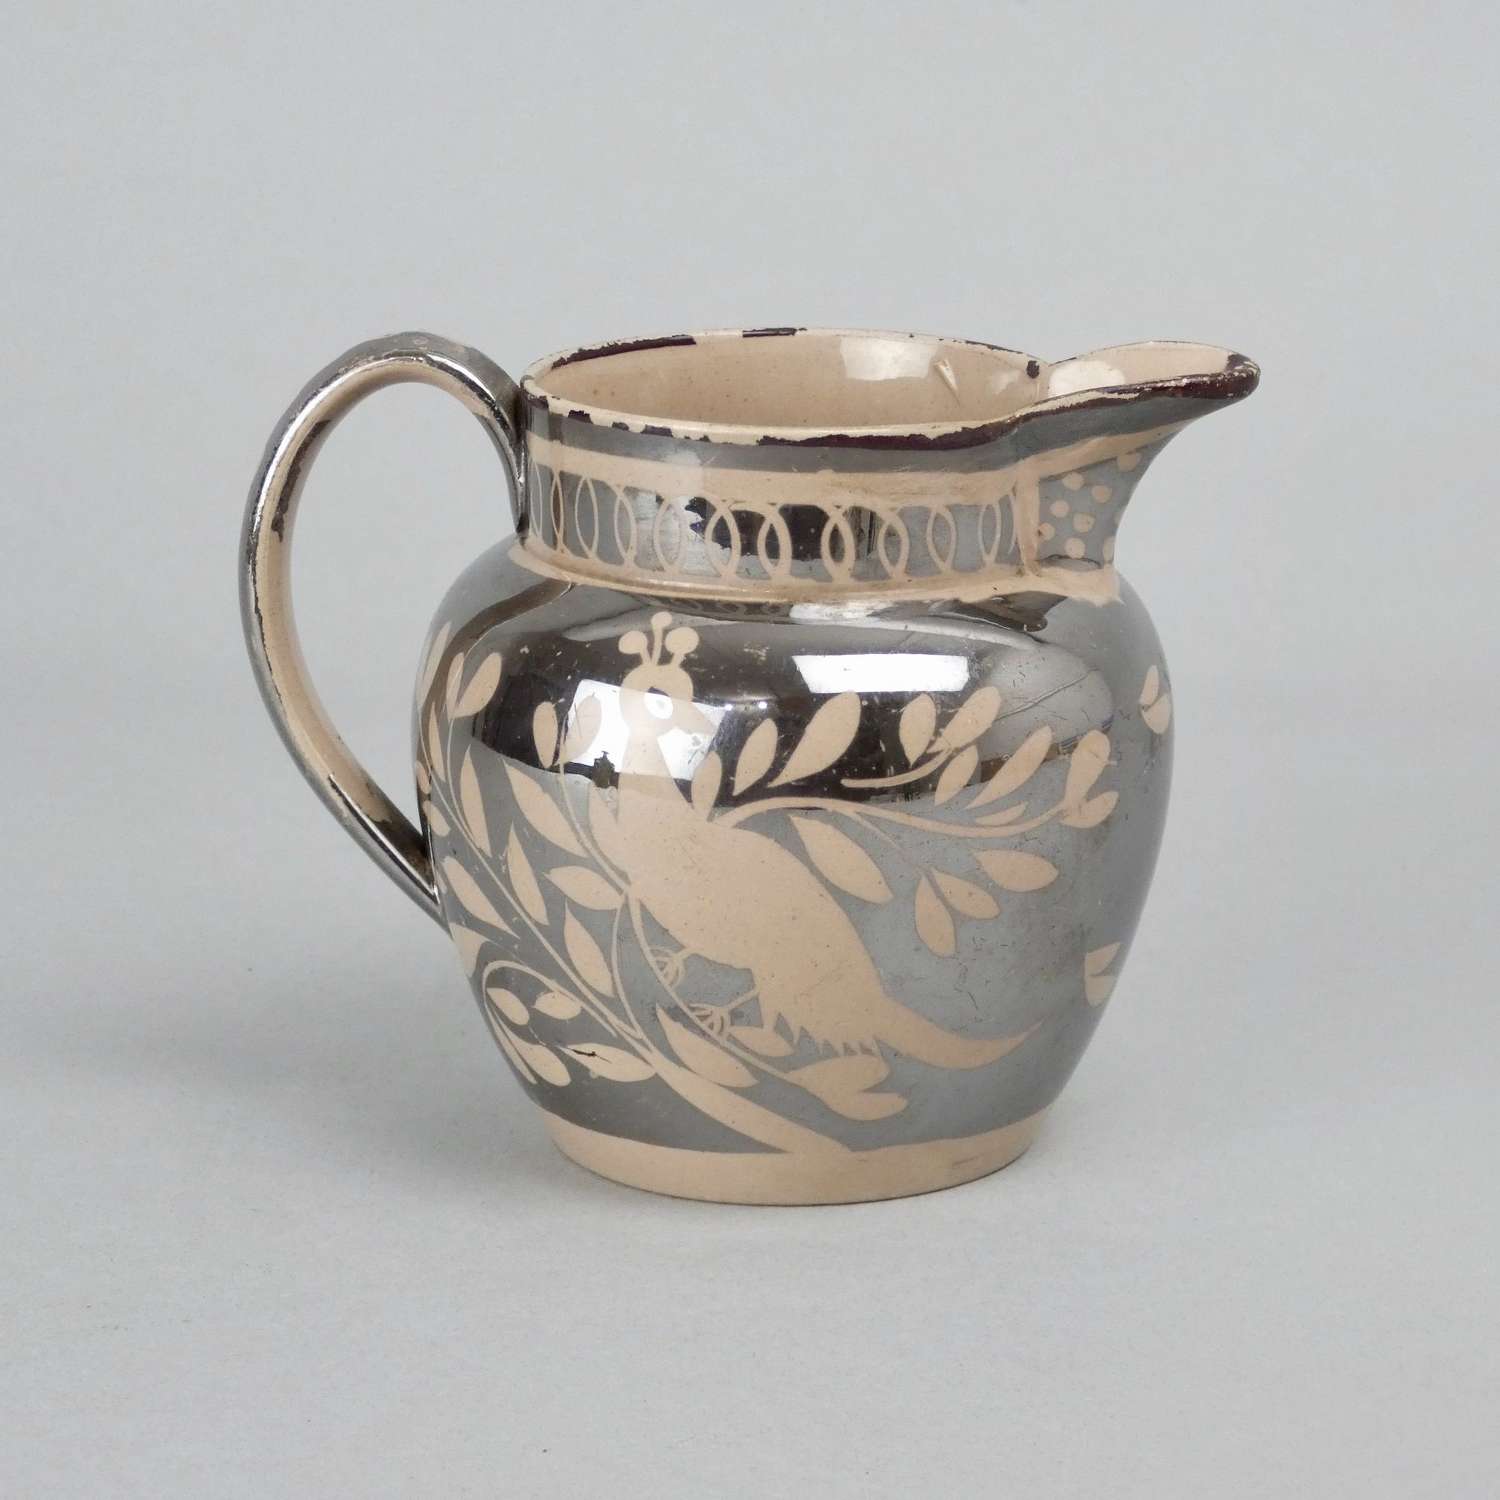 Small, silver lustre jug